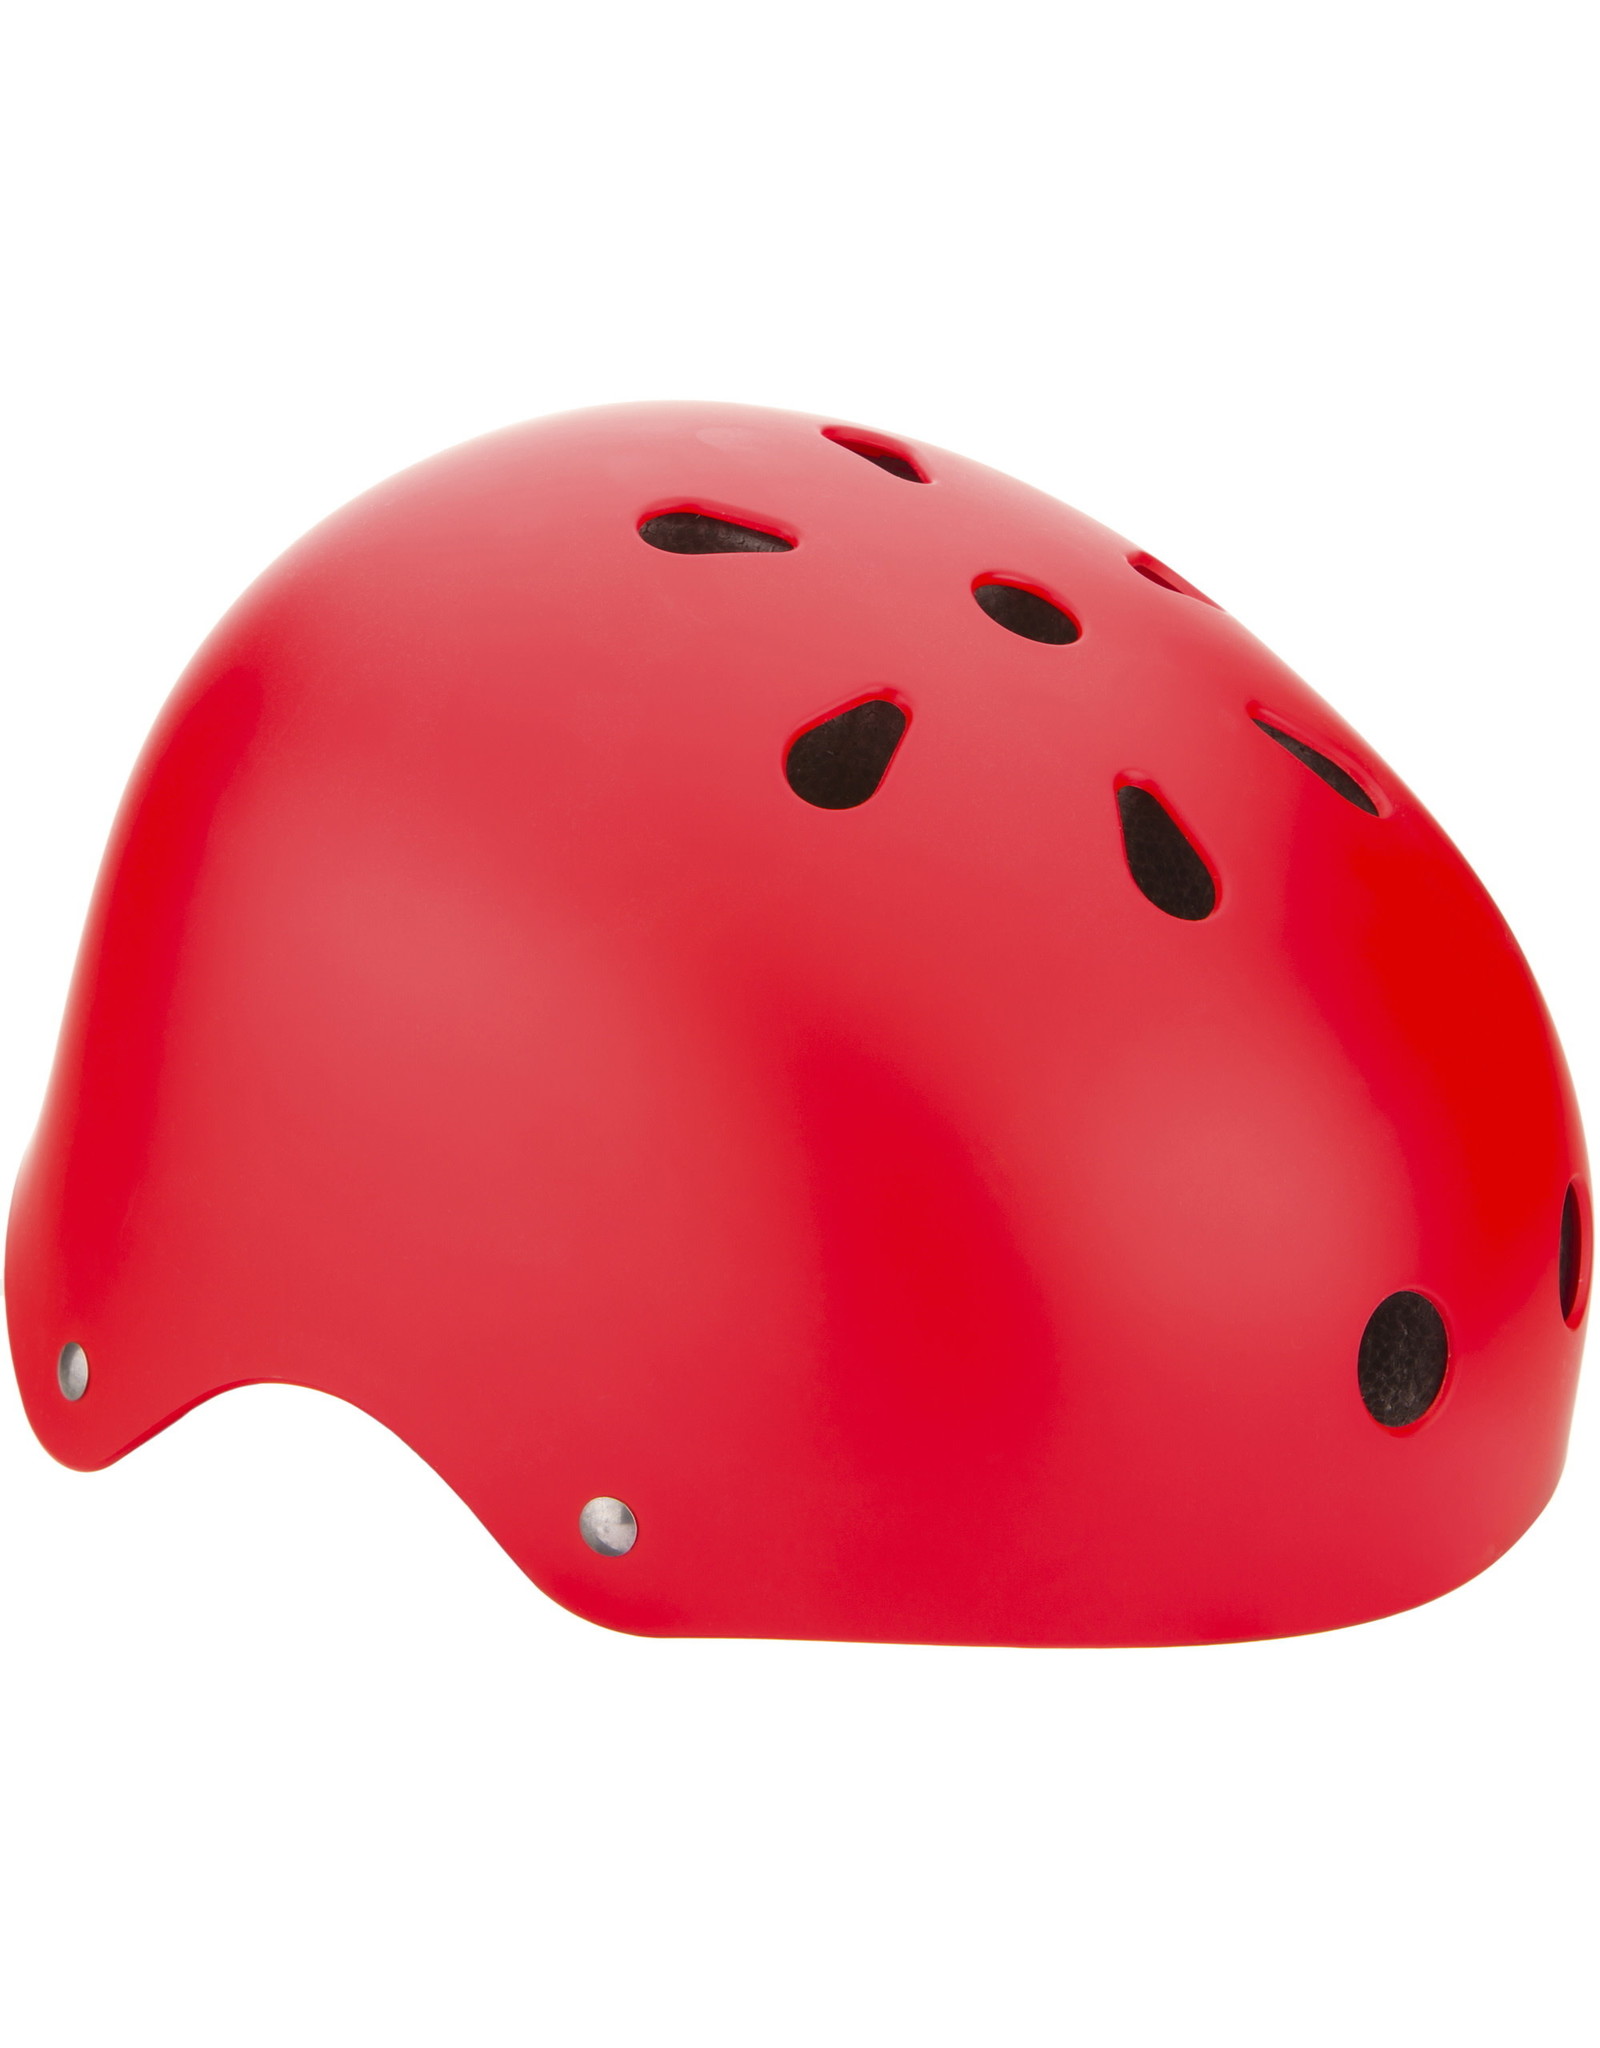 EVO EVO - Chuck, Helmet, Red, SM, 51 - 55cm